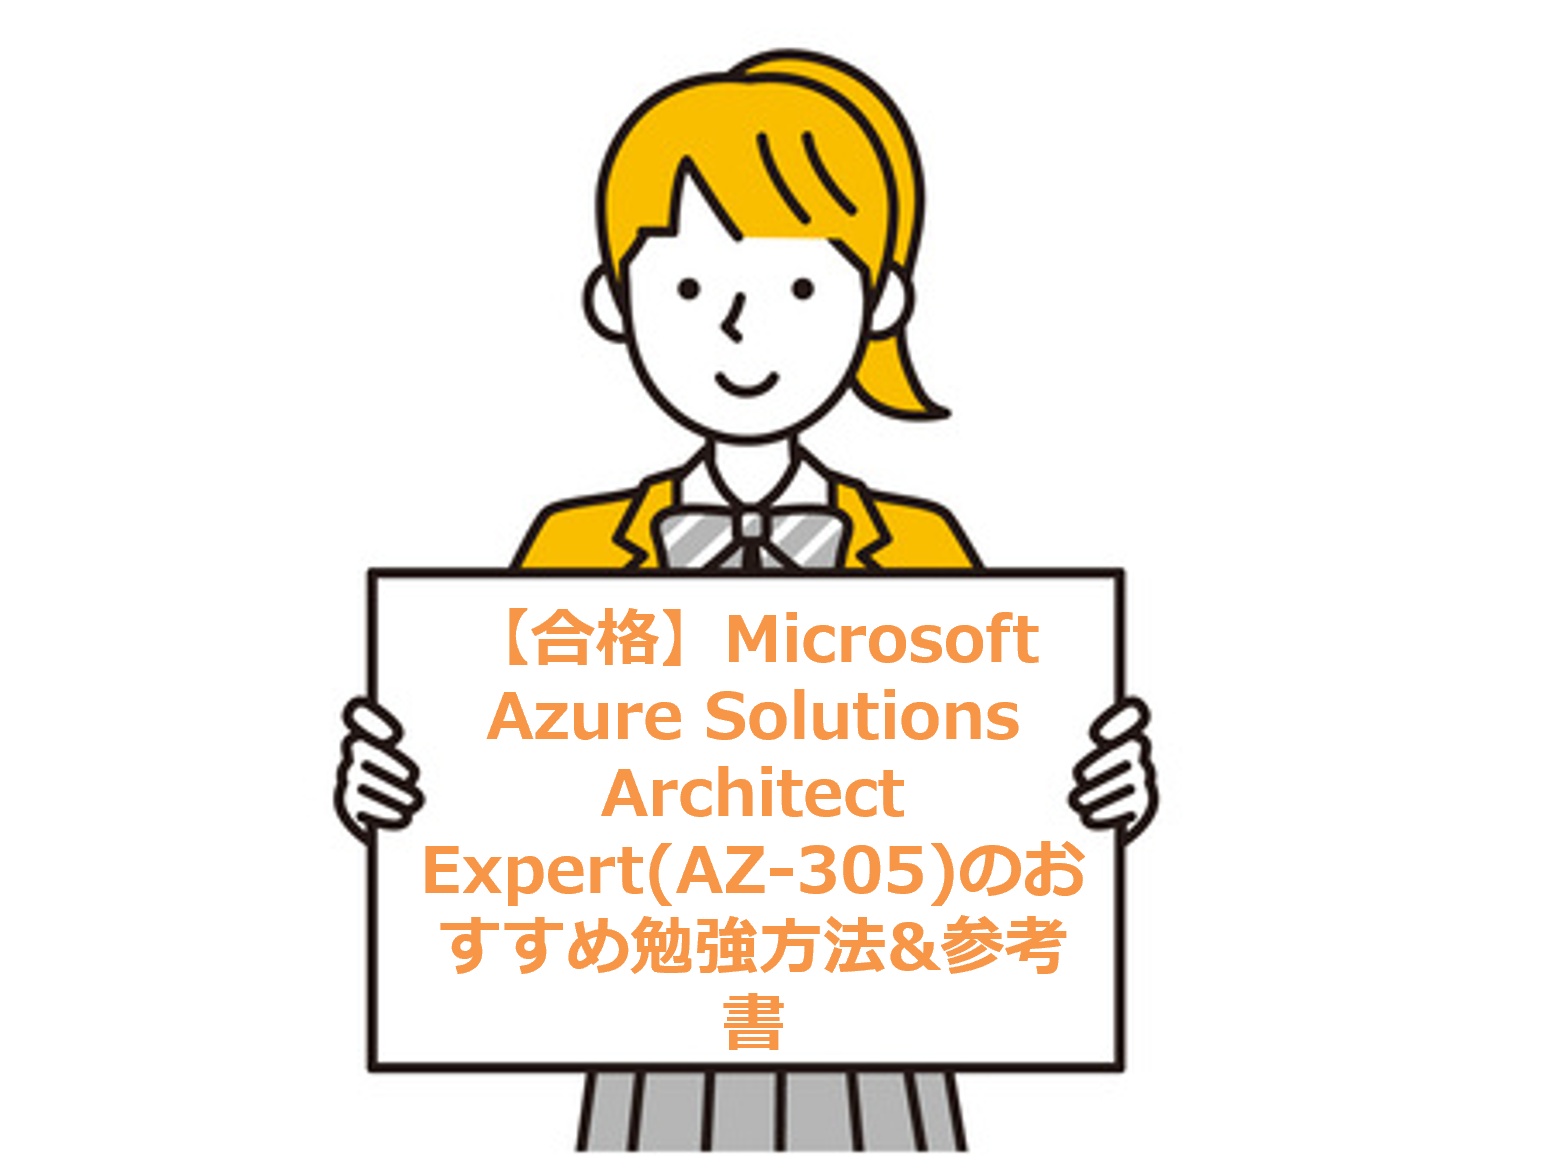 【合格】Microsoft Azure Solutions Architect Expert(AZ-305)のおすすめ勉強方法&参考書